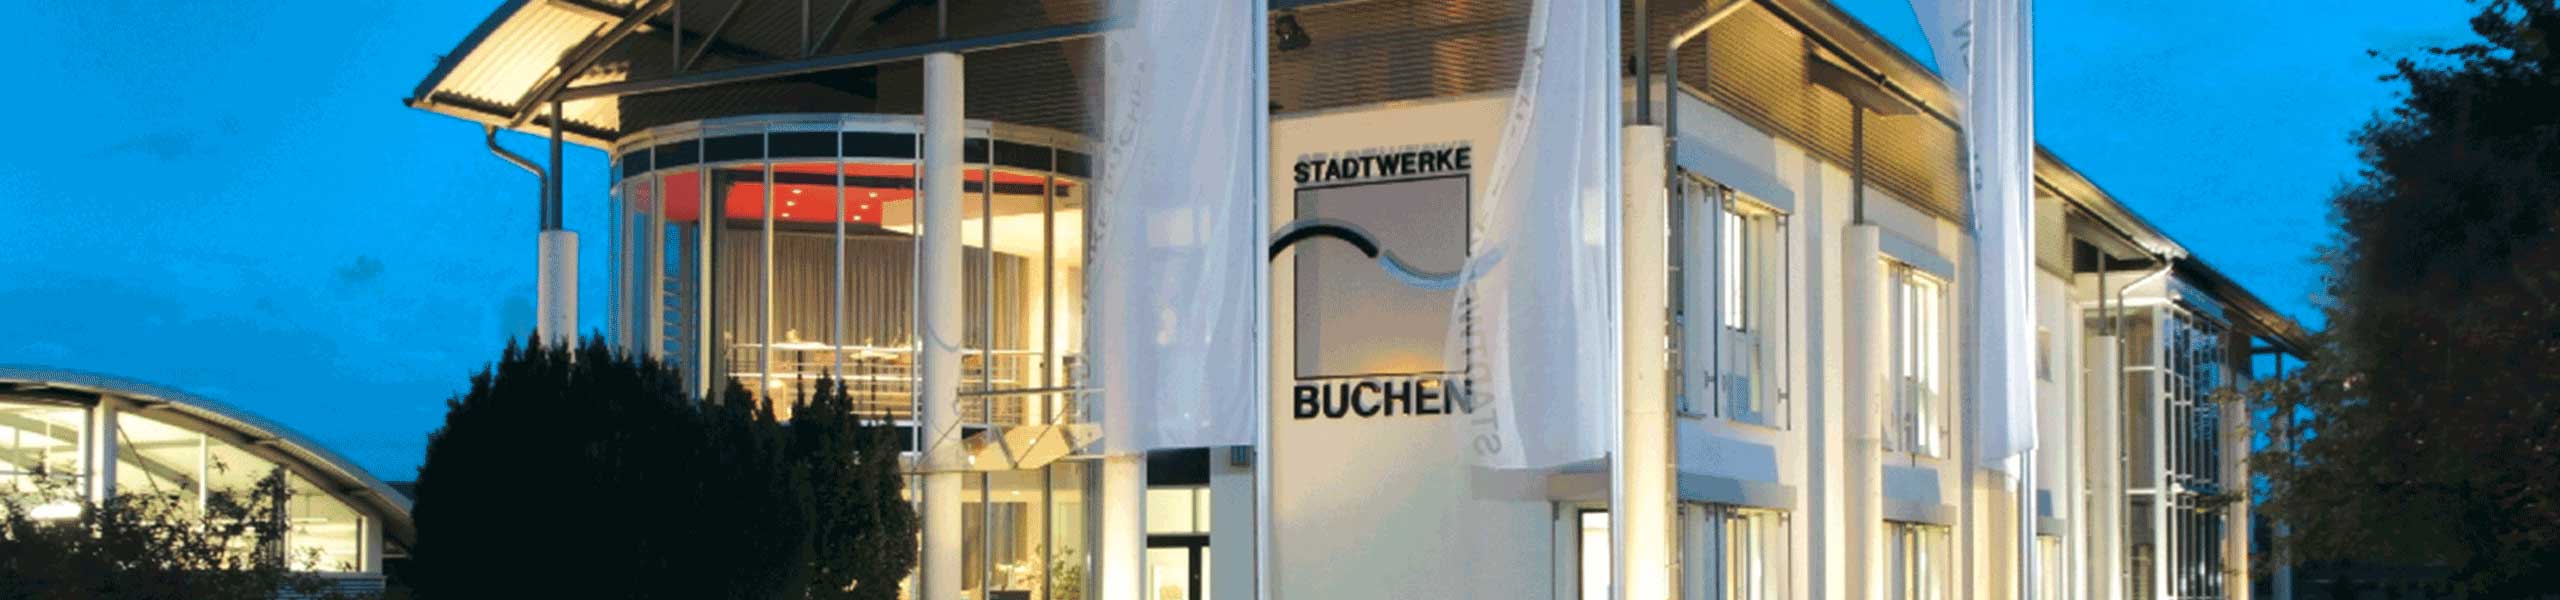 Stadtwerke Buchen GmbH & Co KG - Ihr Versorger vor Ort - Stürzenhardt